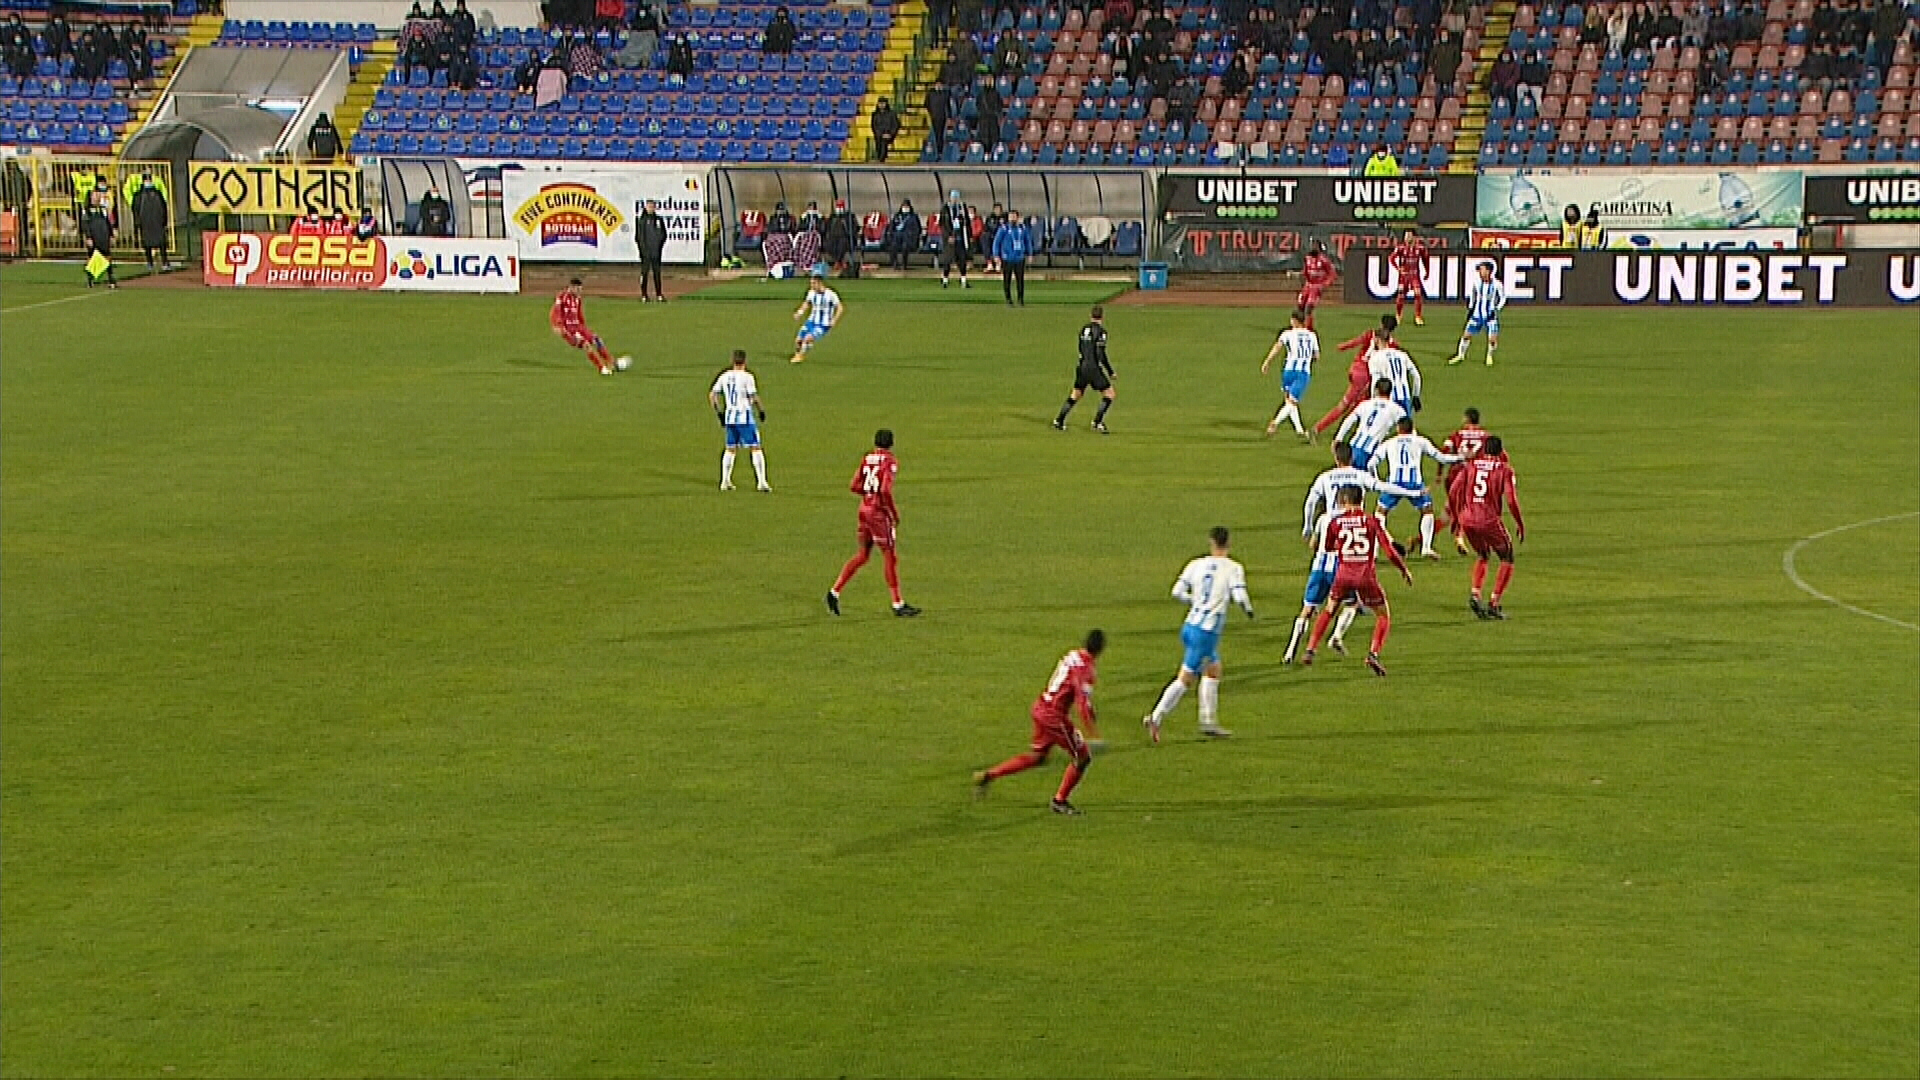 Continuă erorile de arbitraj în Liga 1. Ofsaid flagrant în meciul FC Botoșani - Universitatea Craiova